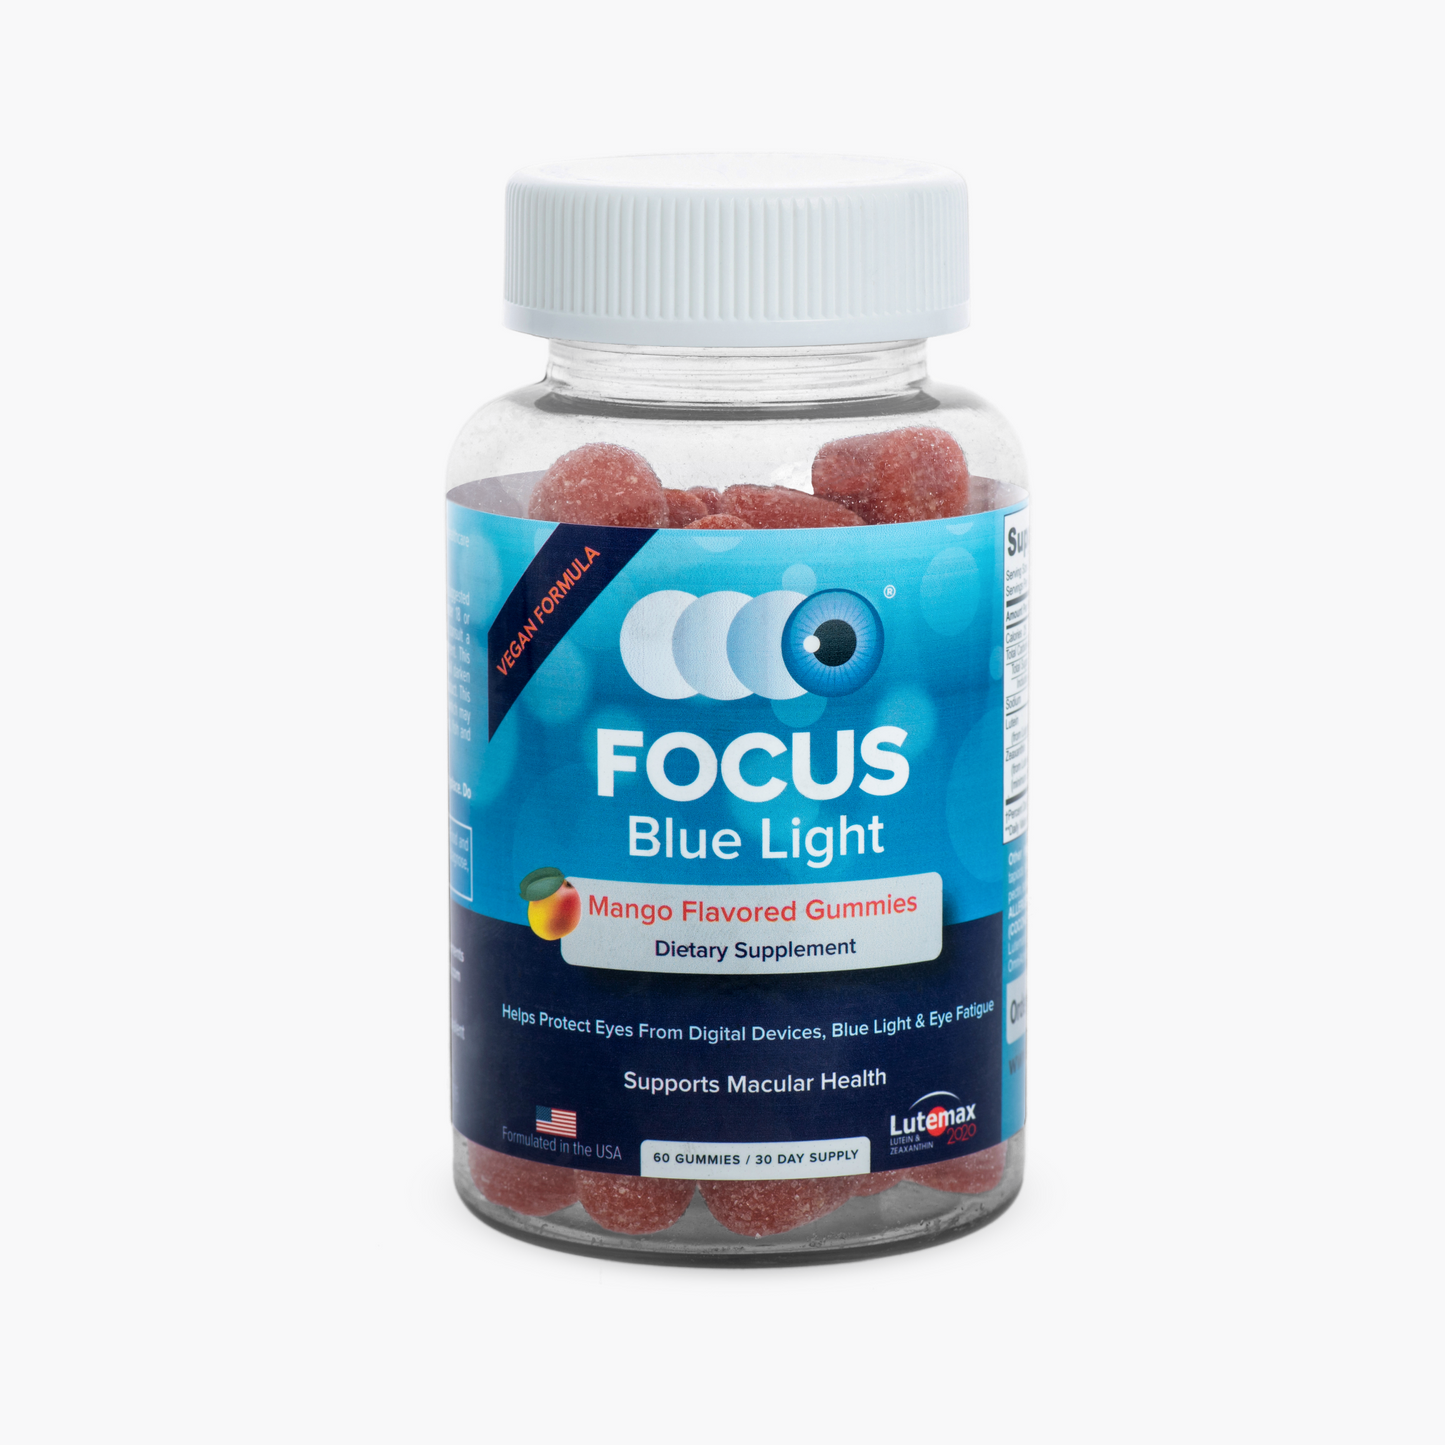 Focus Blue Light - Wholesale